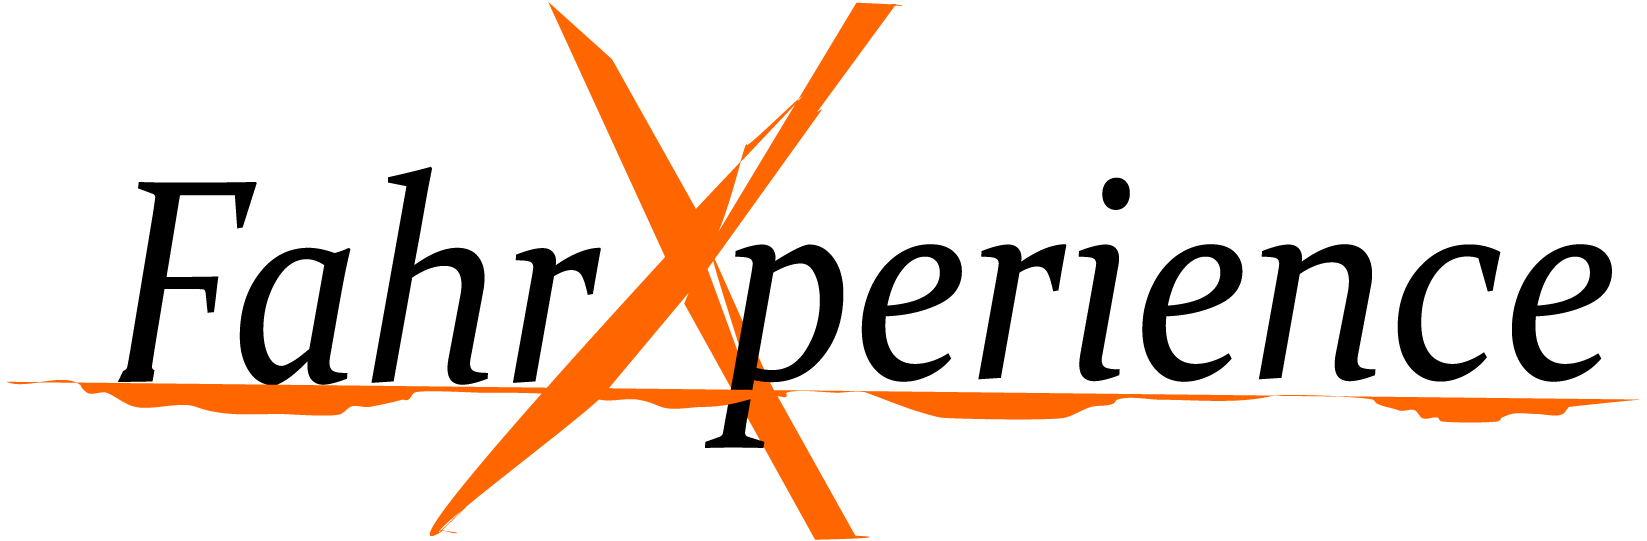 FahrXperience-logo